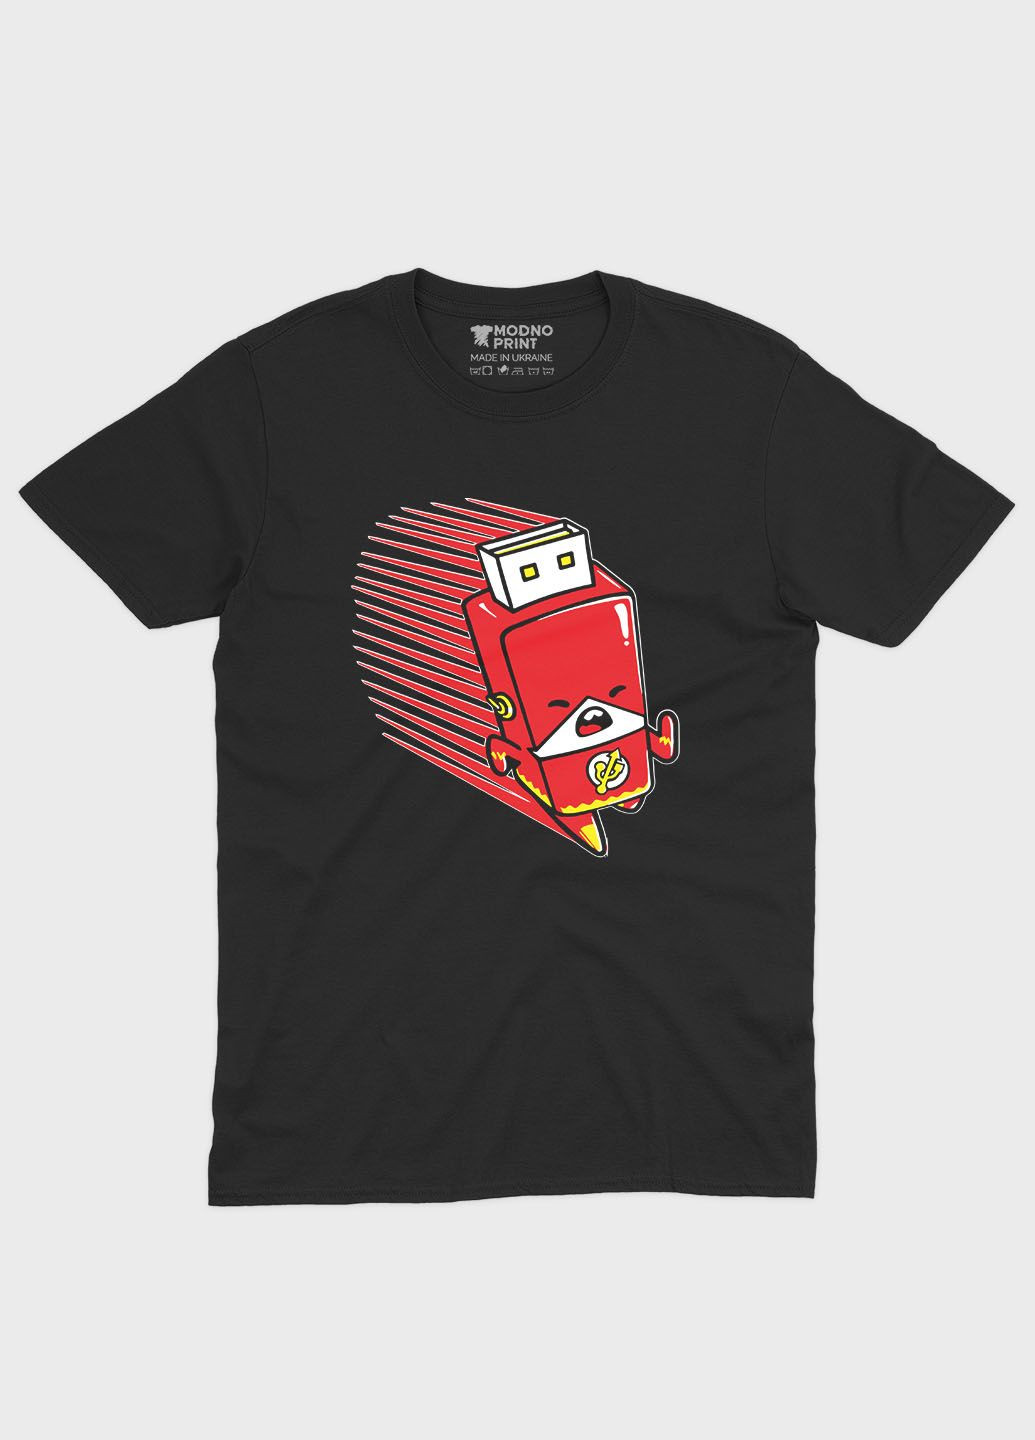 Черная демисезонная футболка для девочки с принтом супергероя - флэш (ts001-1-gl-006-010-004-g) Modno